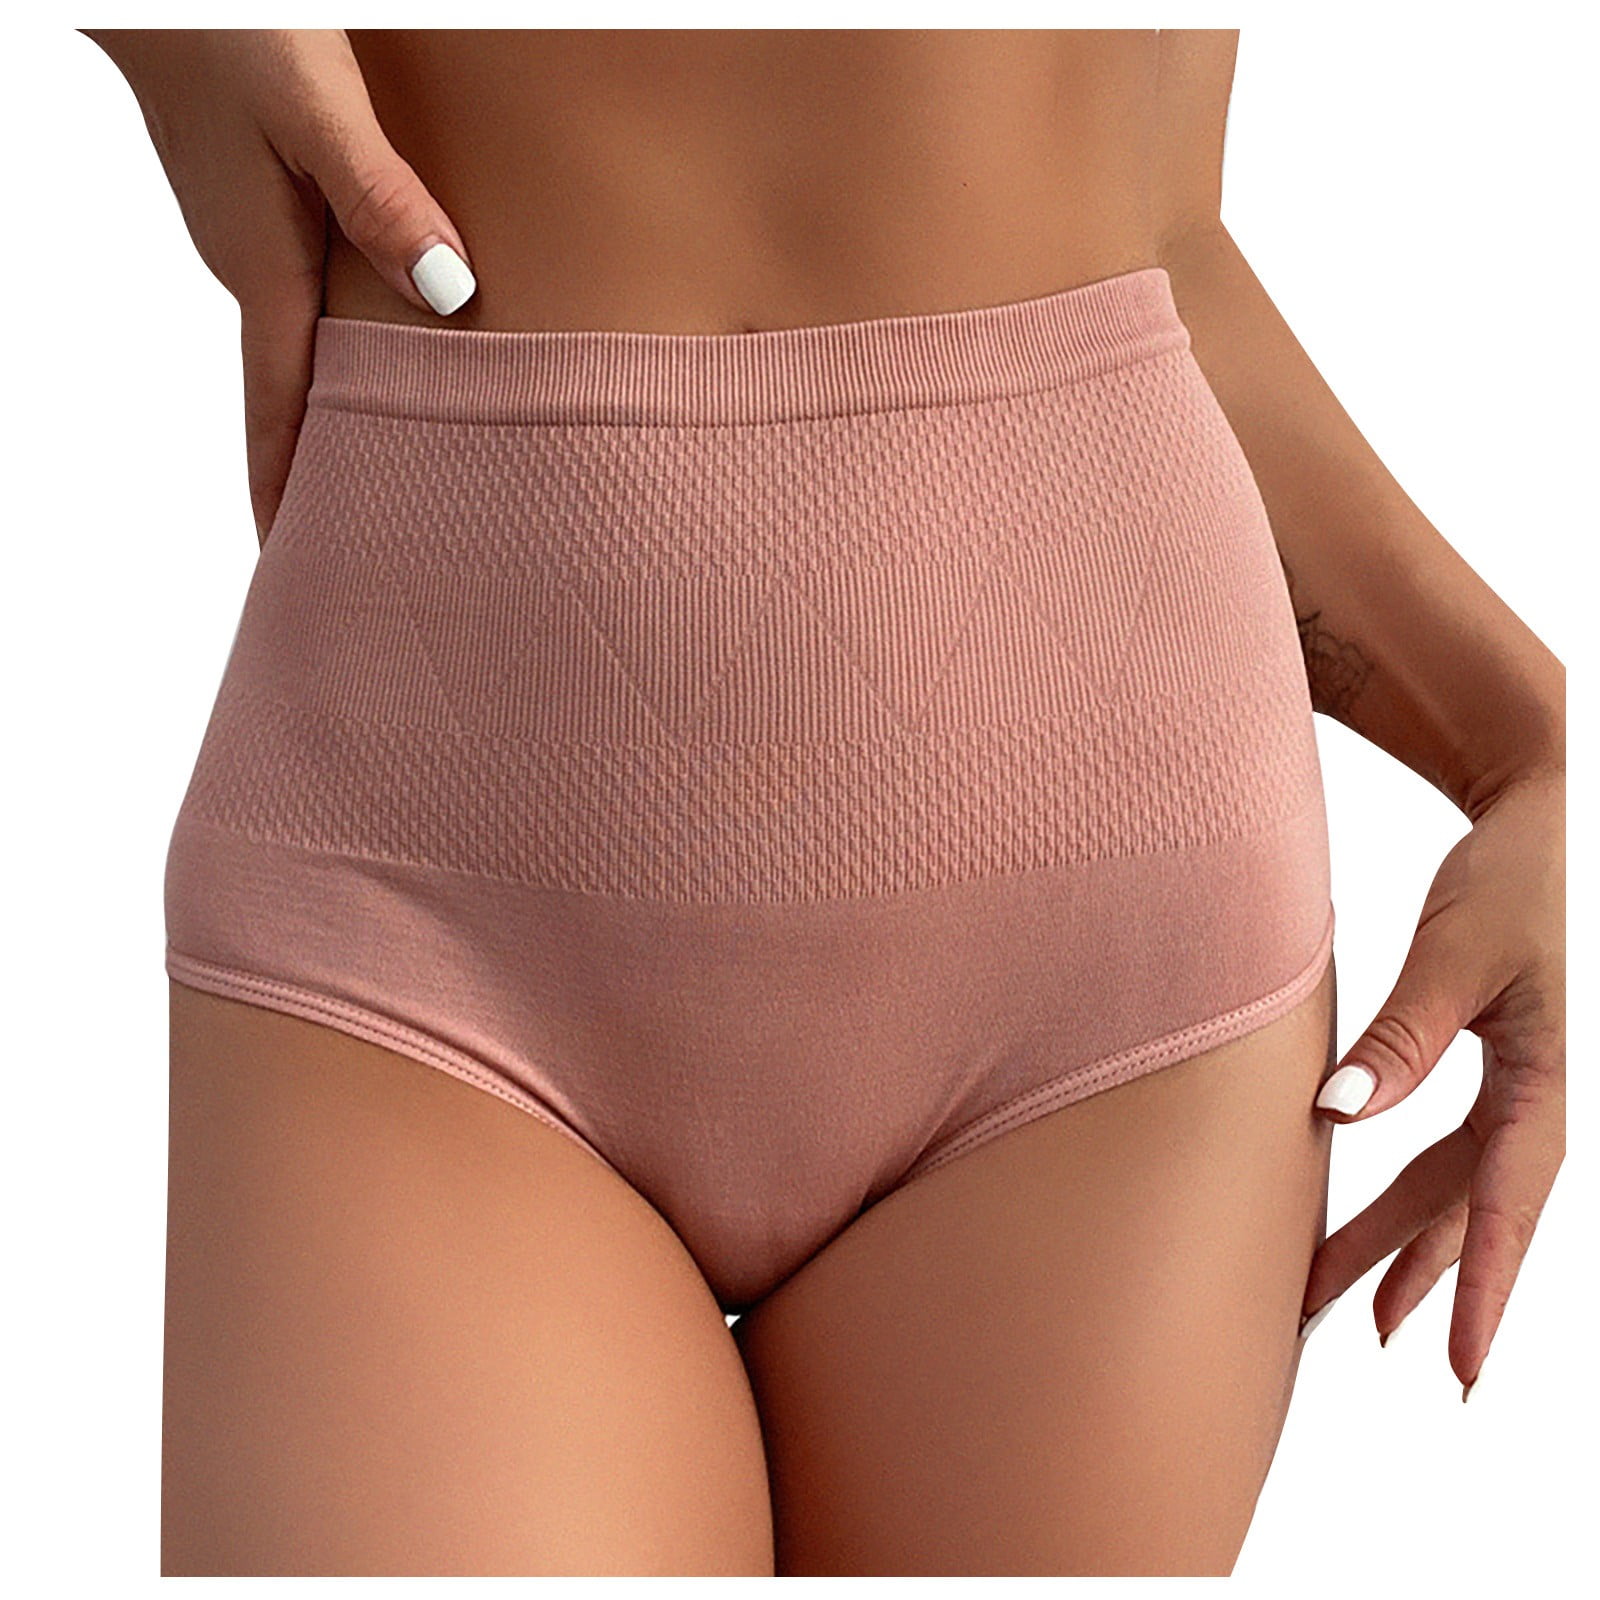 ZMHEGW Tummy Control Underwear For Women Lace Plus Size Low Waist Breifs  Gather Your Waist And Lines Gather Your Waist And Women's Panties 